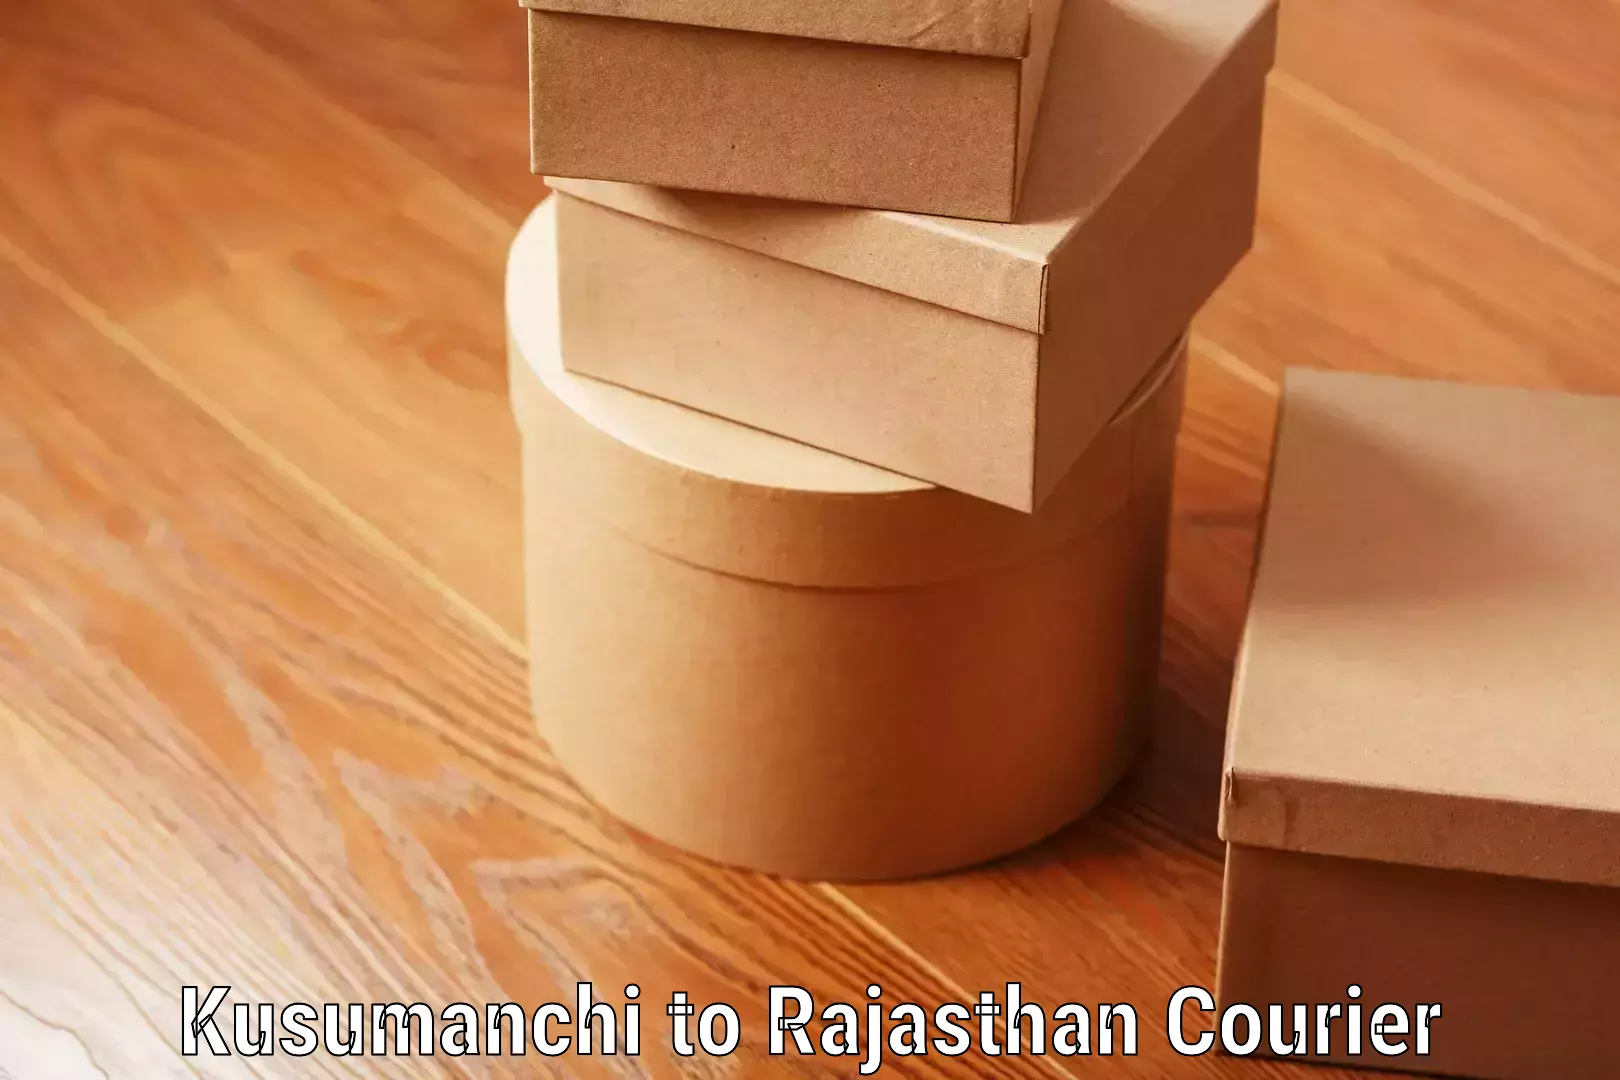 Baggage transport scheduler Kusumanchi to Rajasthan